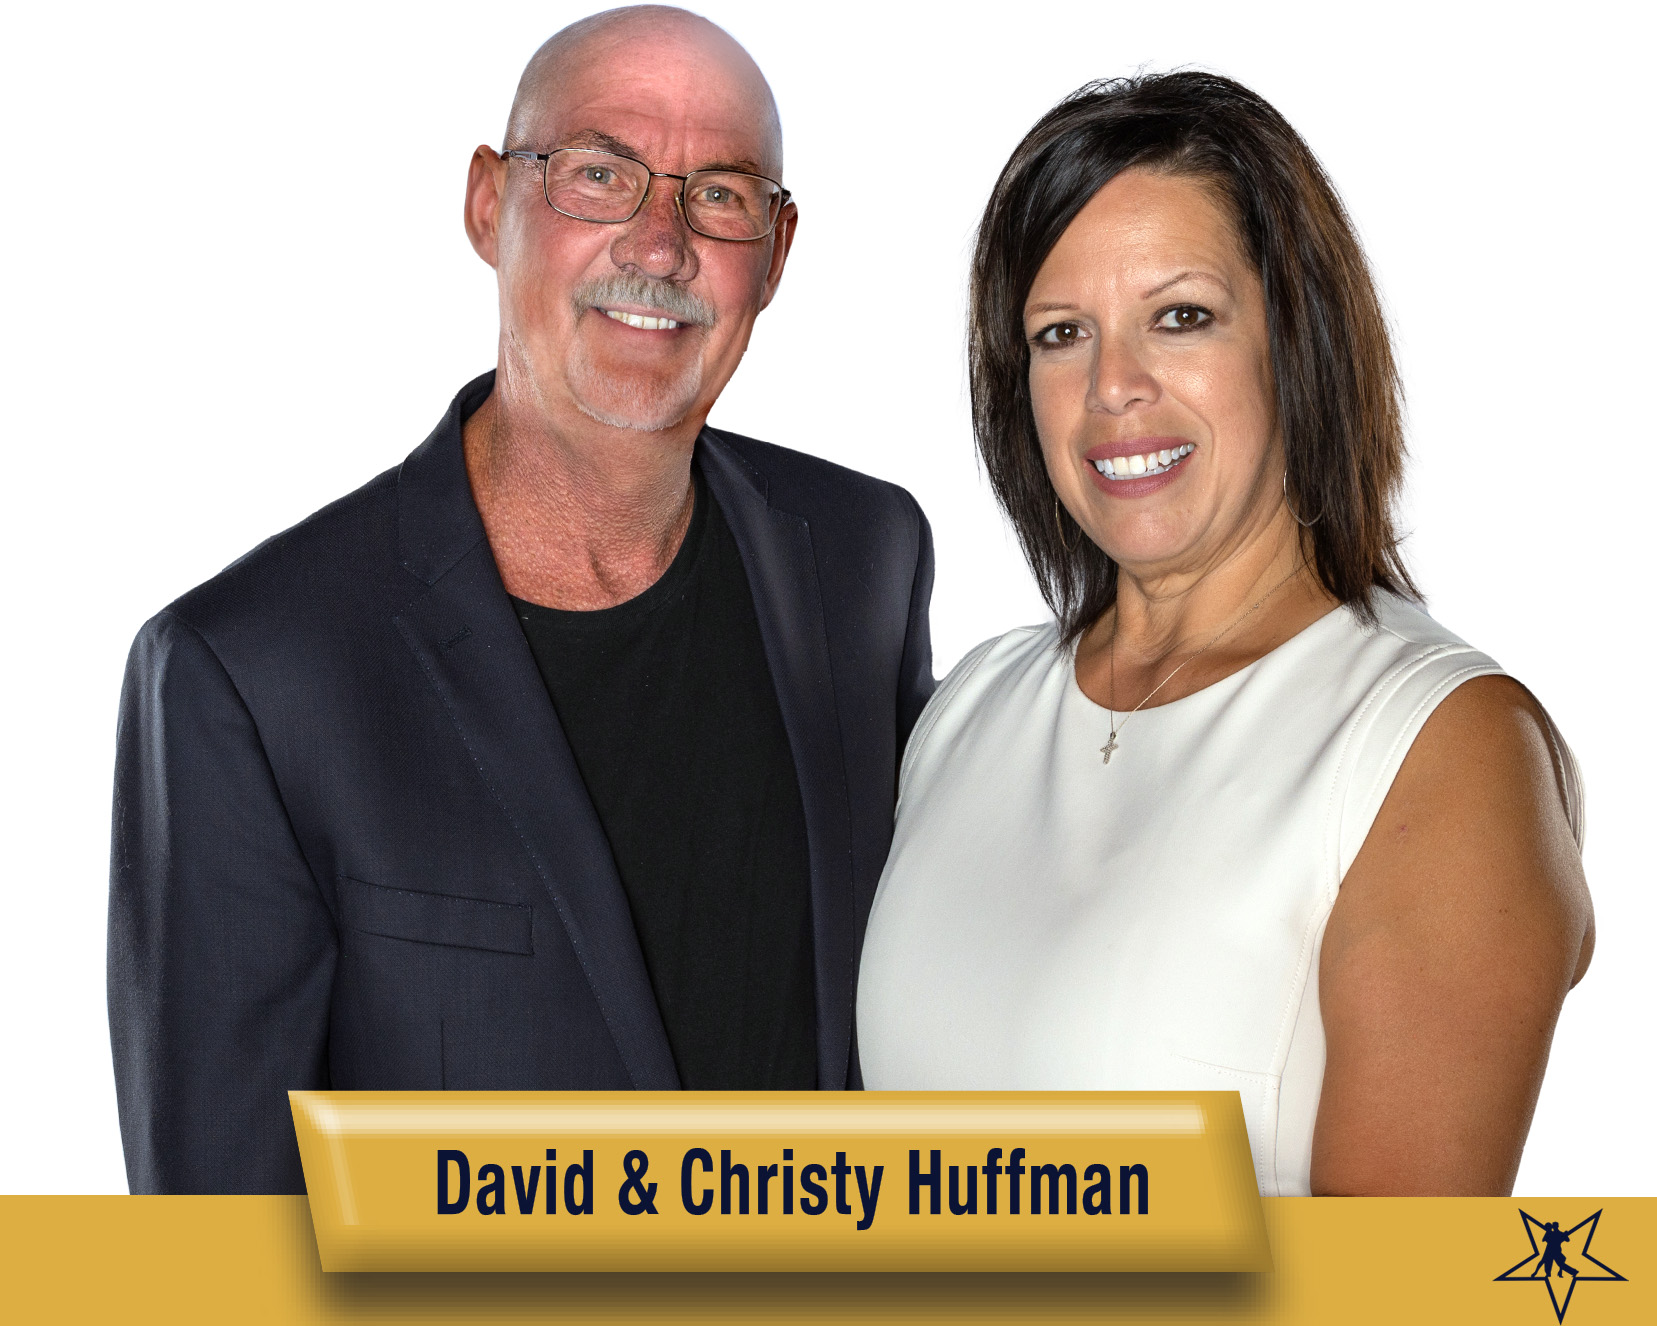 David and Christy Huffman